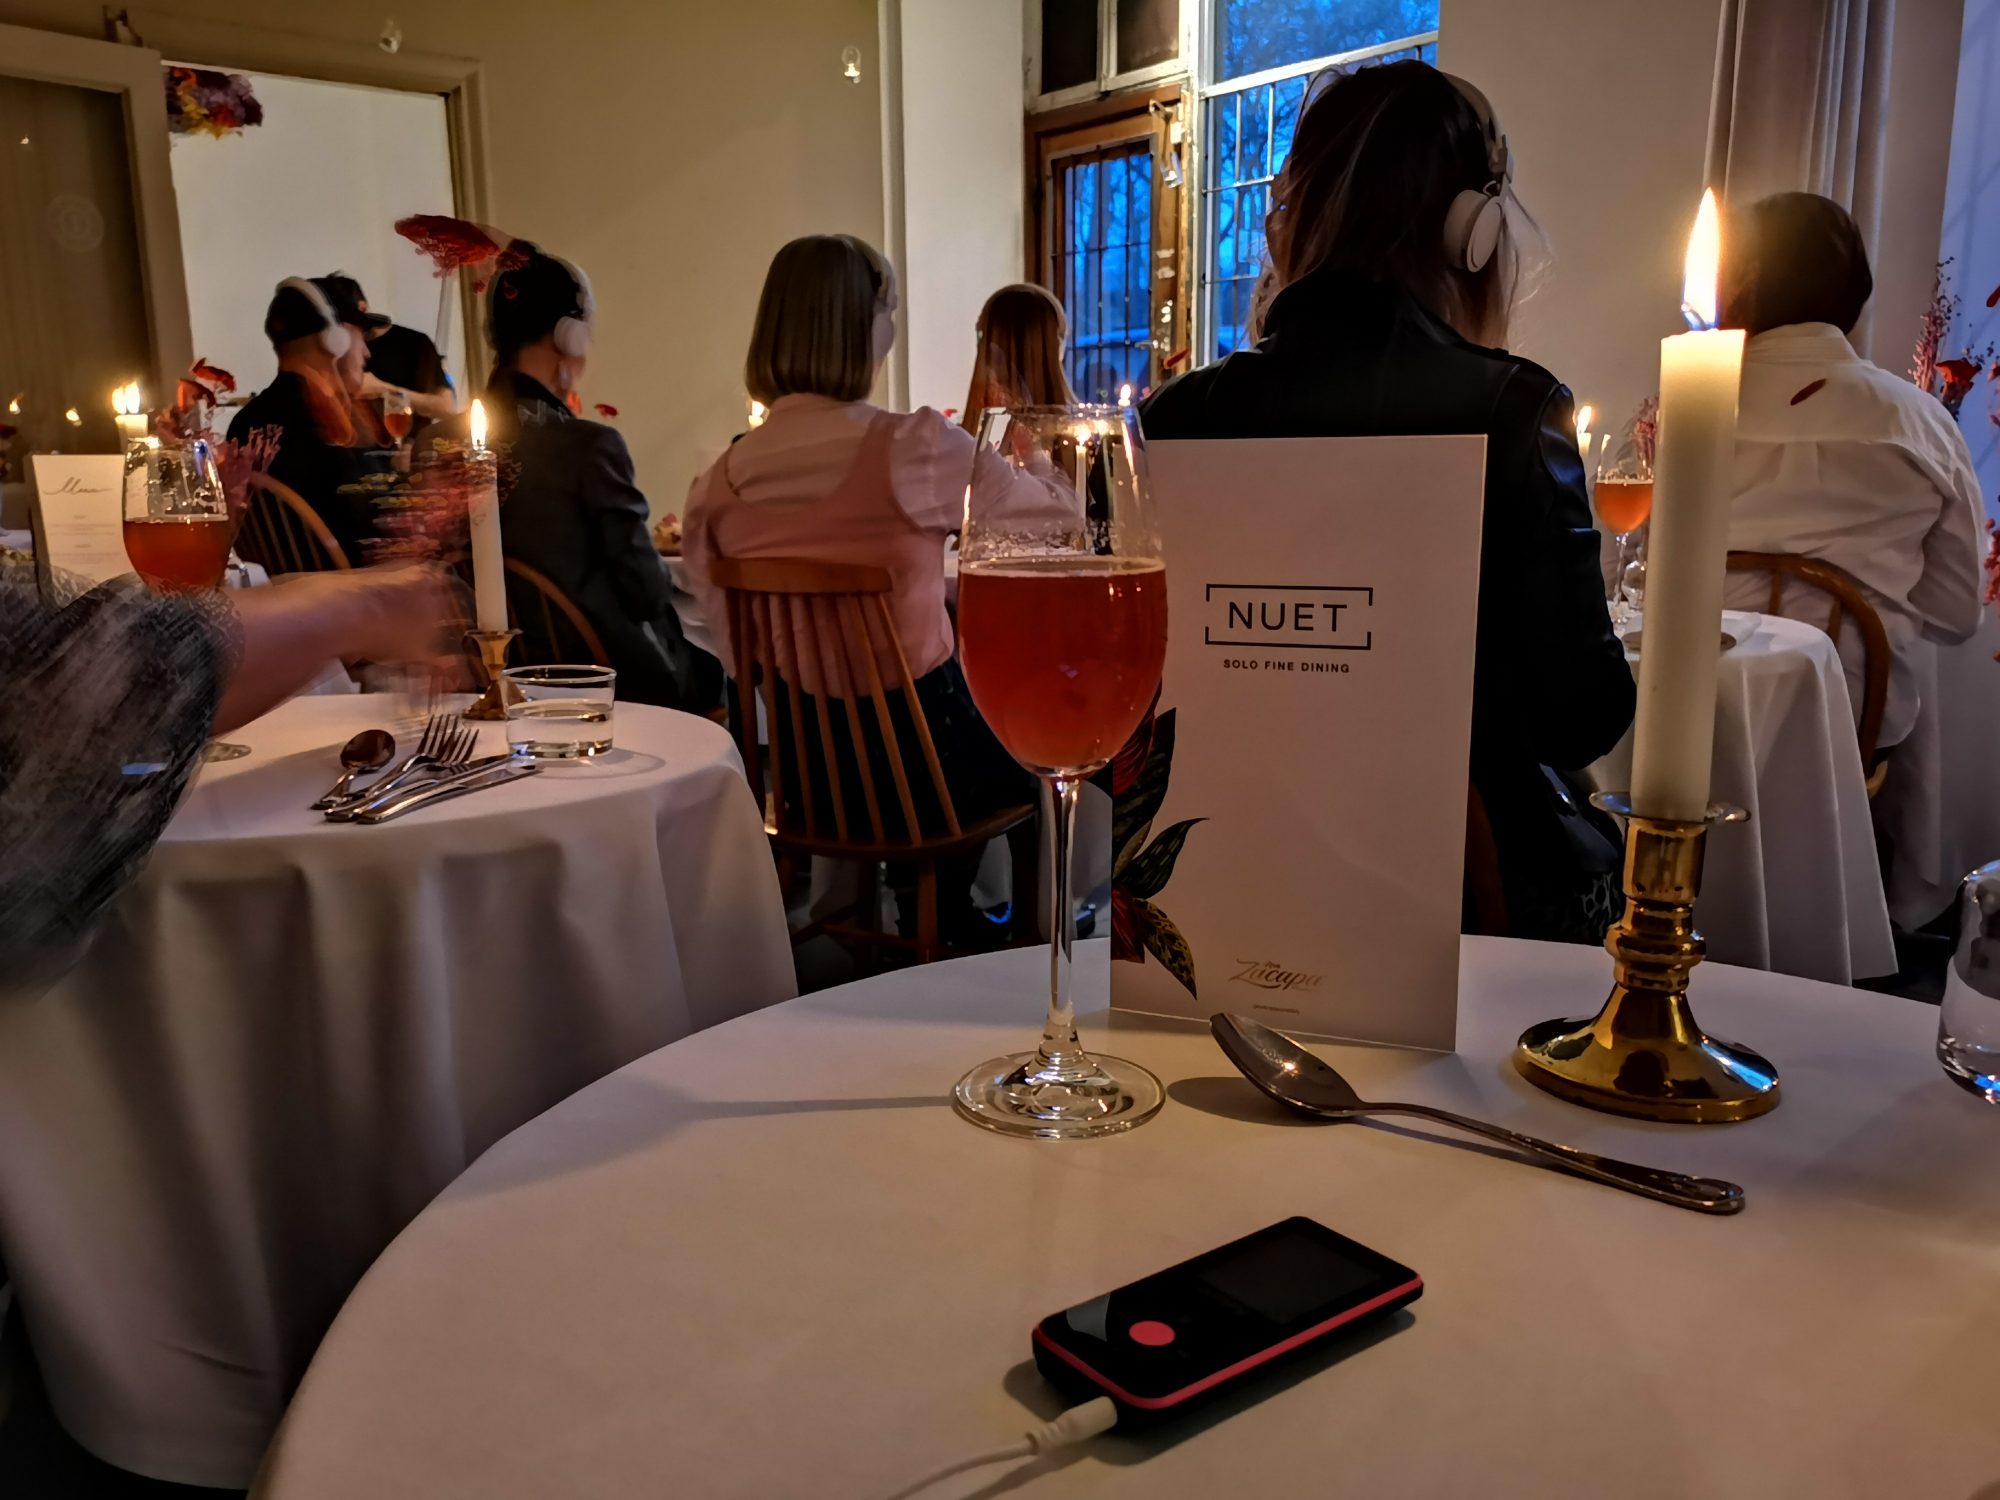 Äta ensam på restaurang - Nuet 3.0 Solo Fine Dining